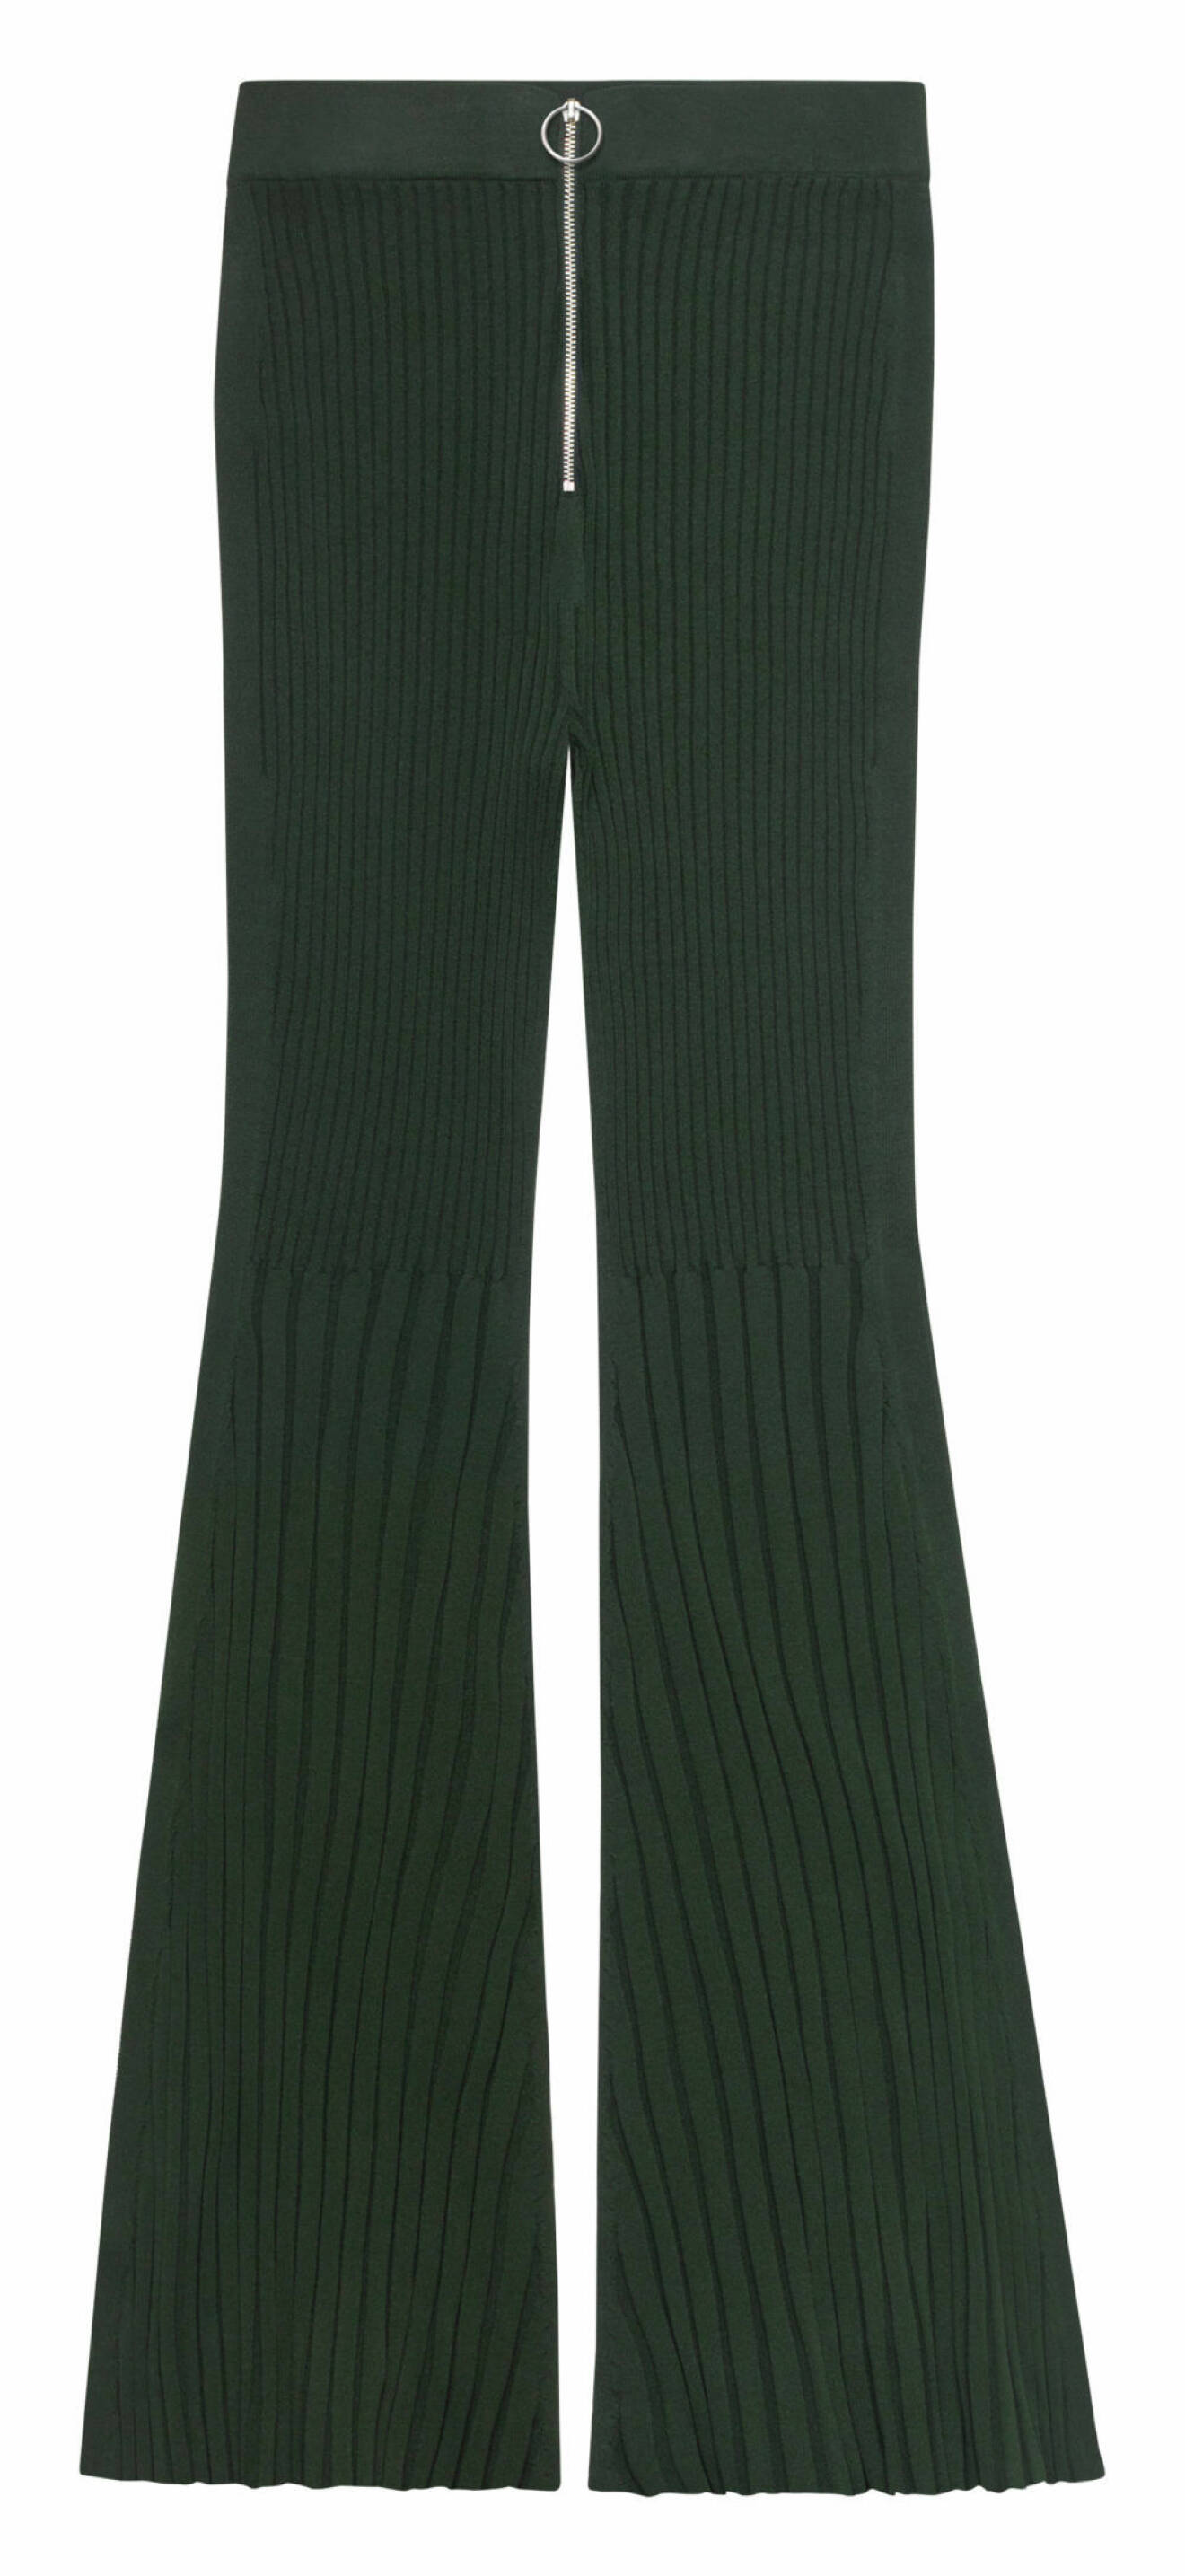 Gröna byxor från H&M. 